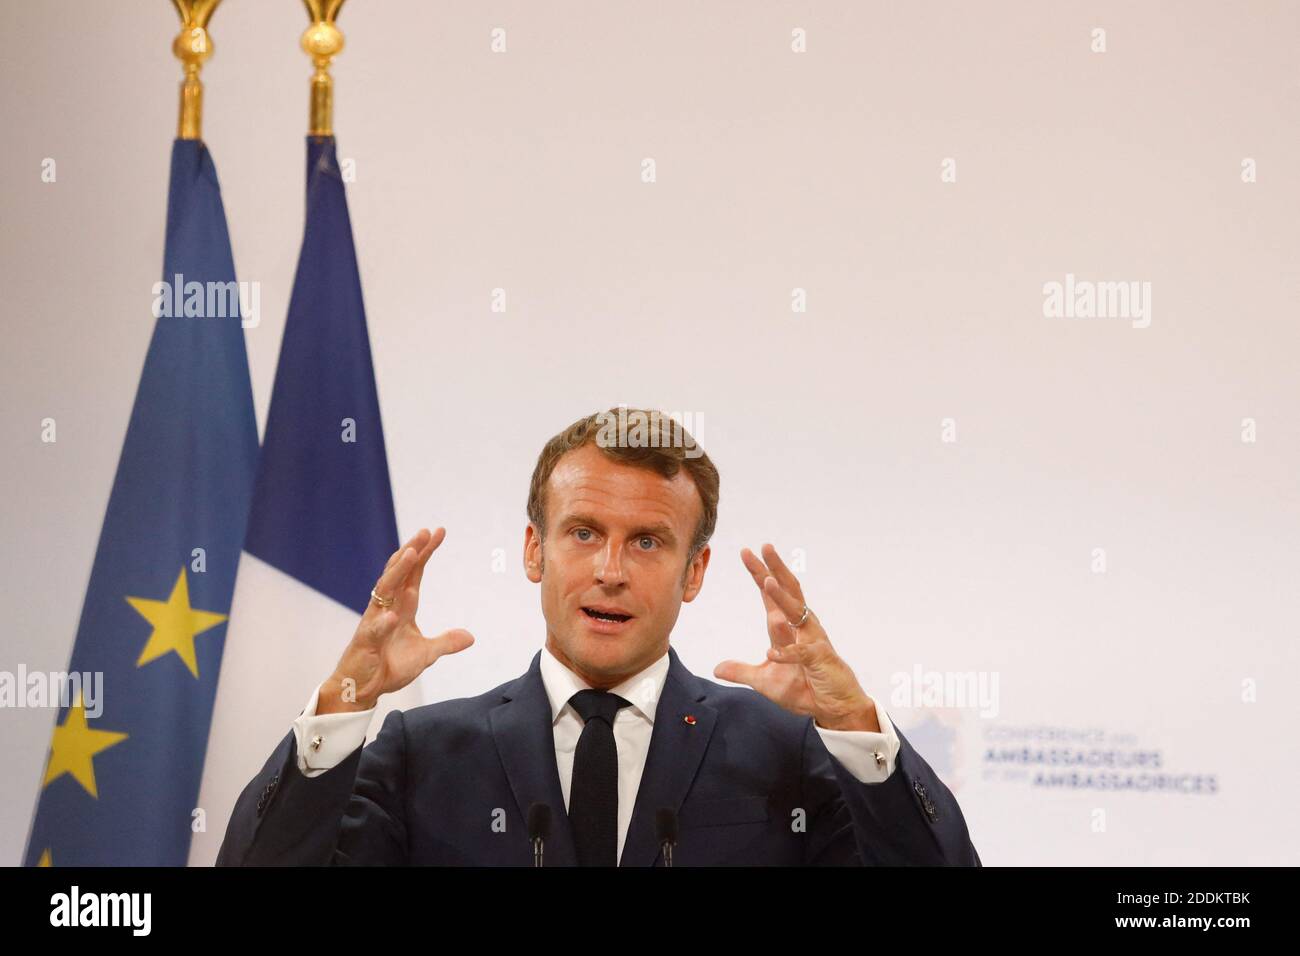 Il presidente francese Emmanuel Macron ha pronunciato un discorso durante la conferenza annuale degli ambasciatori francesi che si tiene presso l'Elysee Palace di Parigi il 27 agosto 2019. Foto di Hamilton/Pool/ABACAPRESS.COM Foto Stock